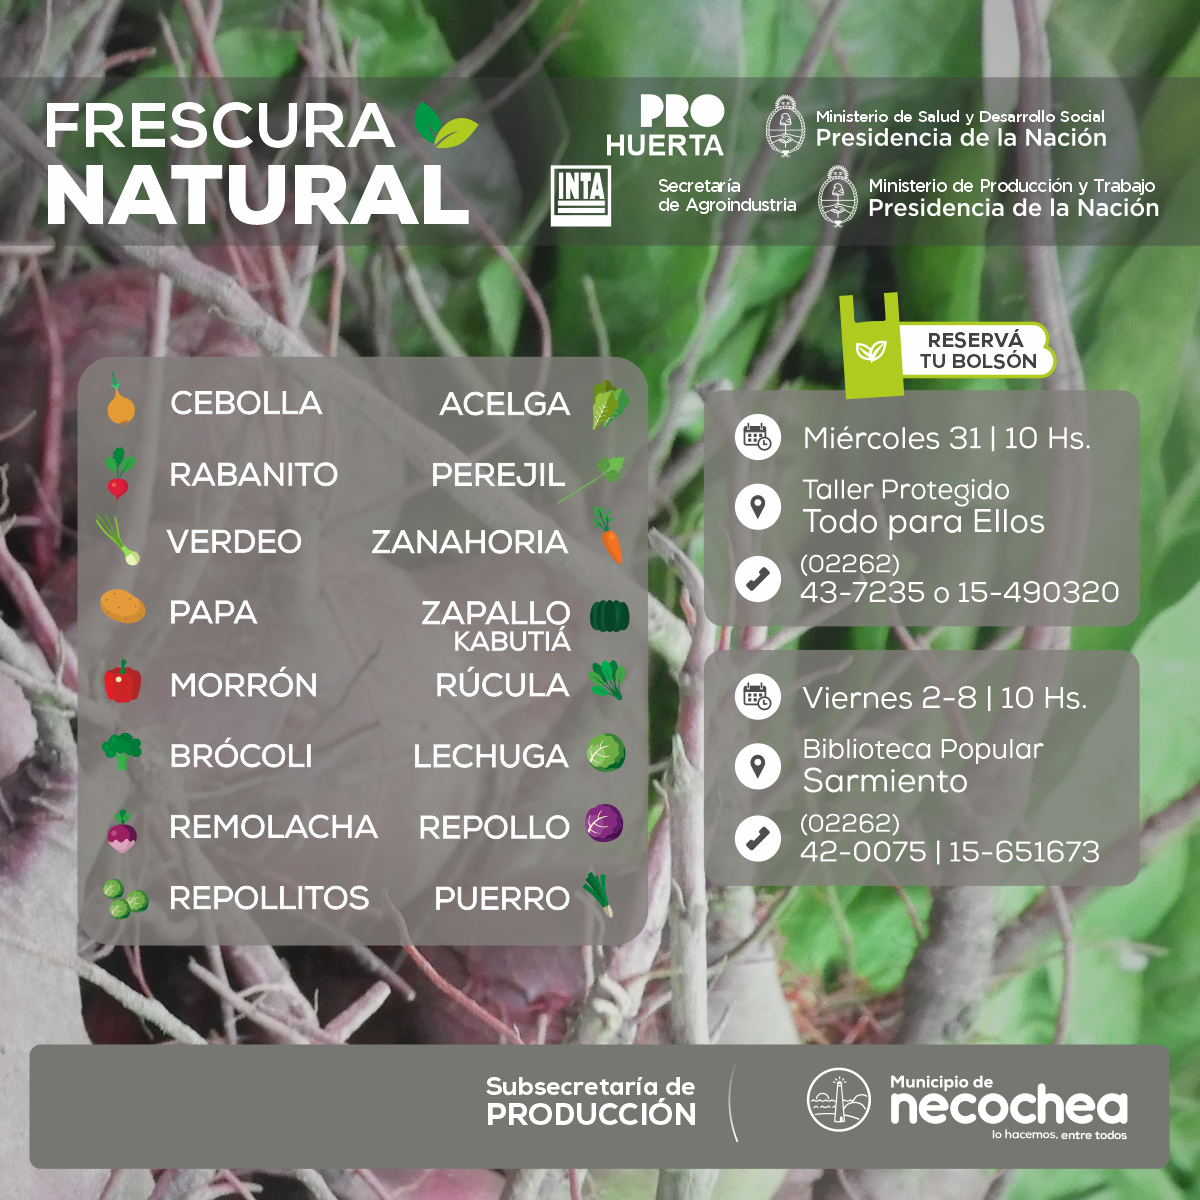 Esta semana, los bolsones de Frescura Natural se expenderán en dos puntos de venta